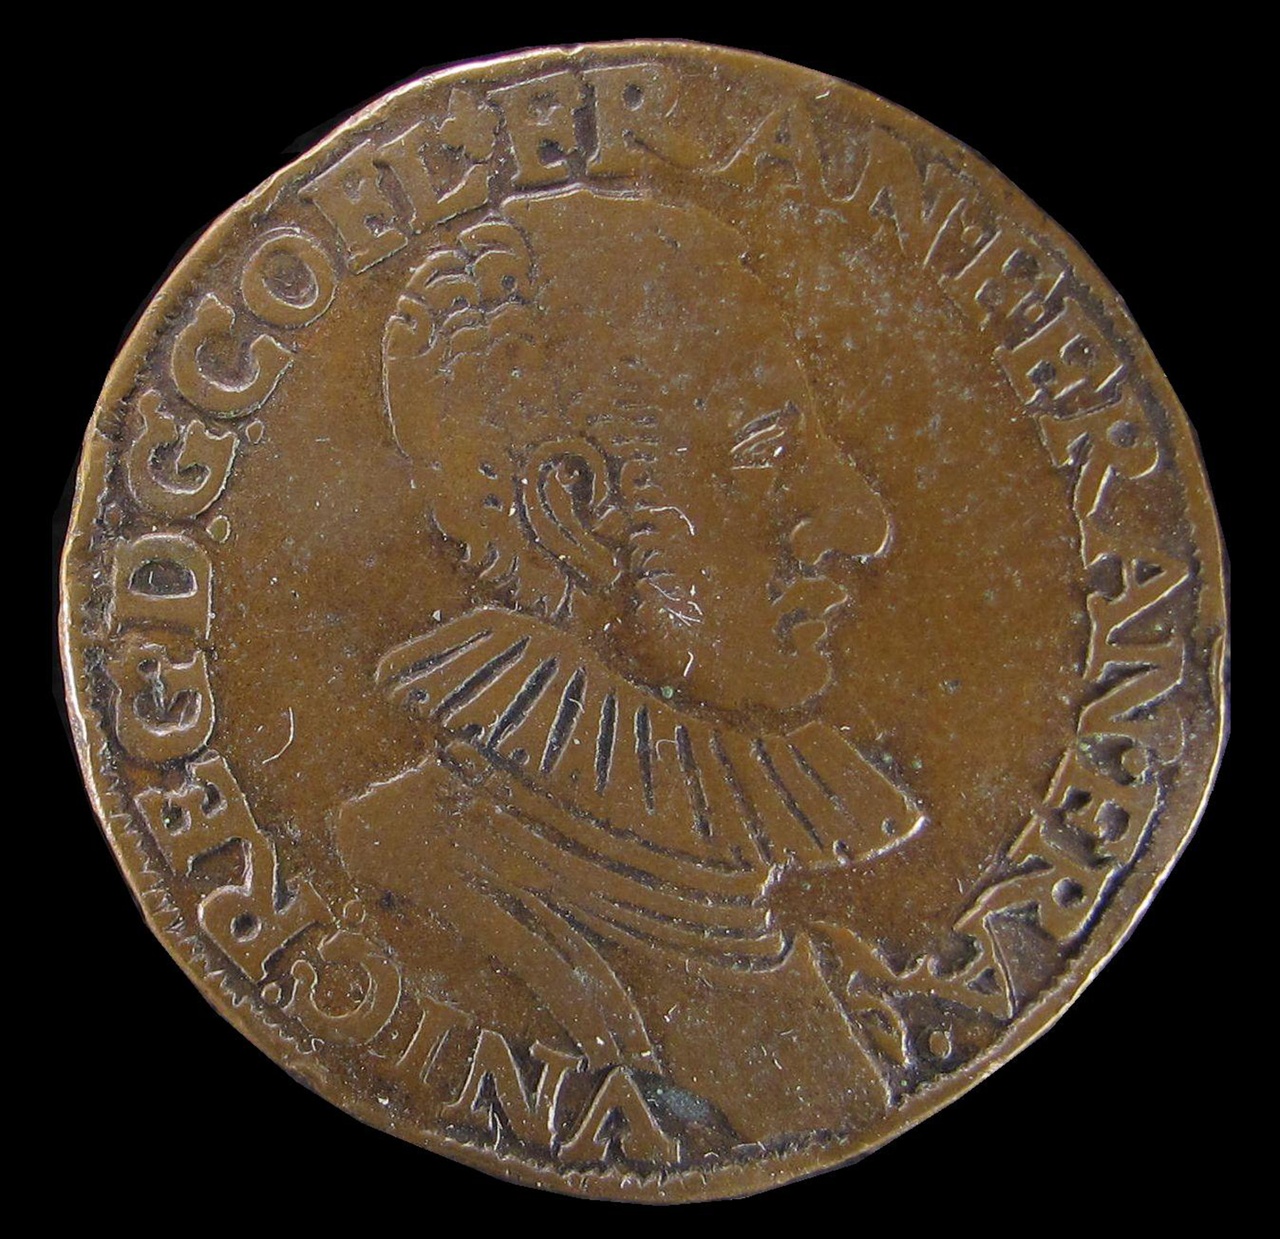 Legpenning op de hertog van Anjou, 1582